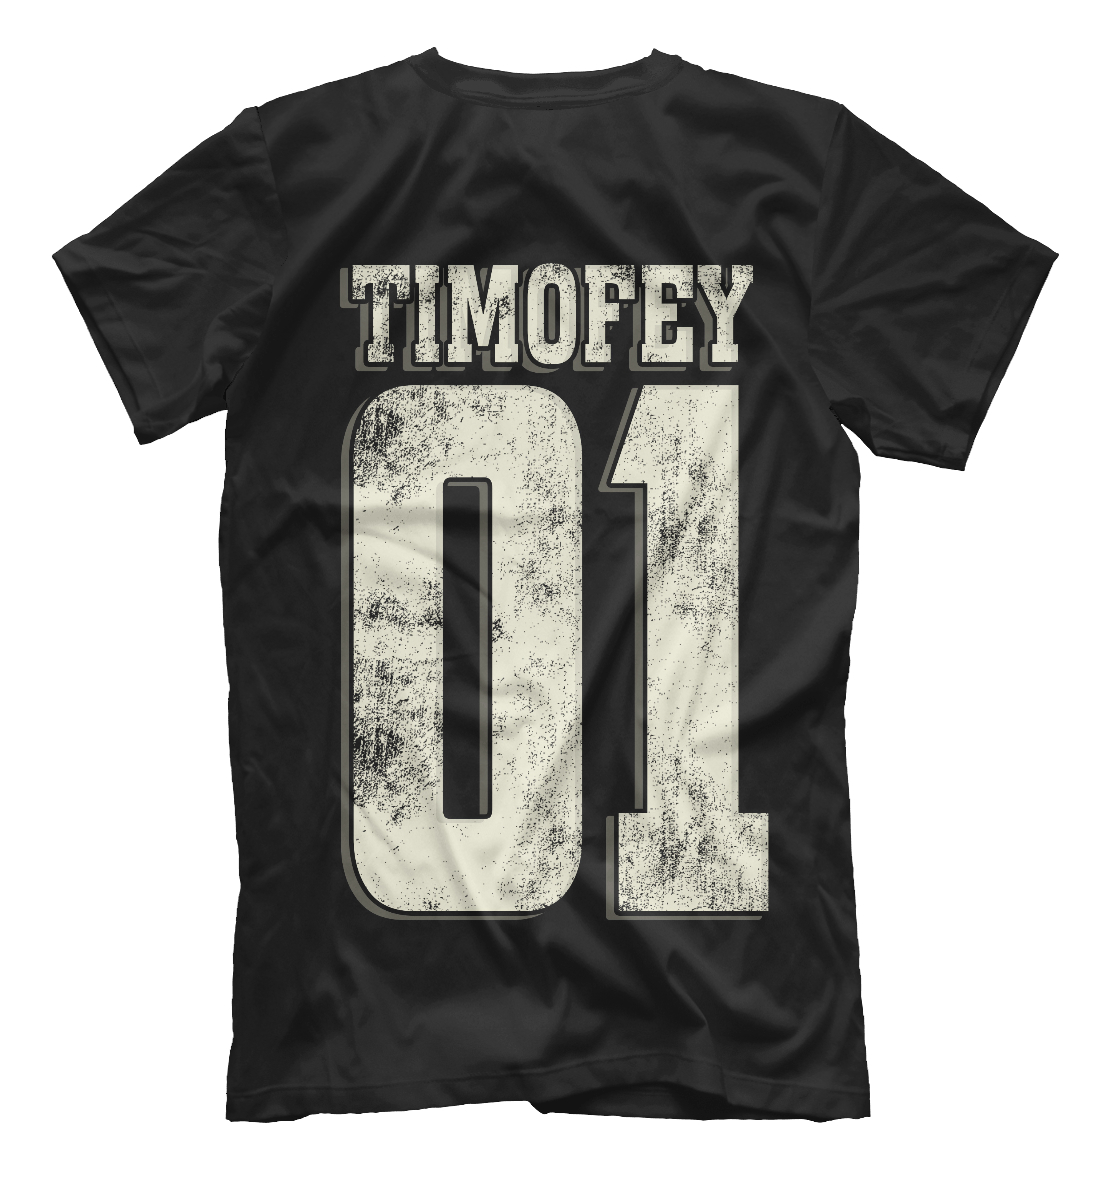 Мужская футболка с принтом Тимофей 01  - фото 2-спина